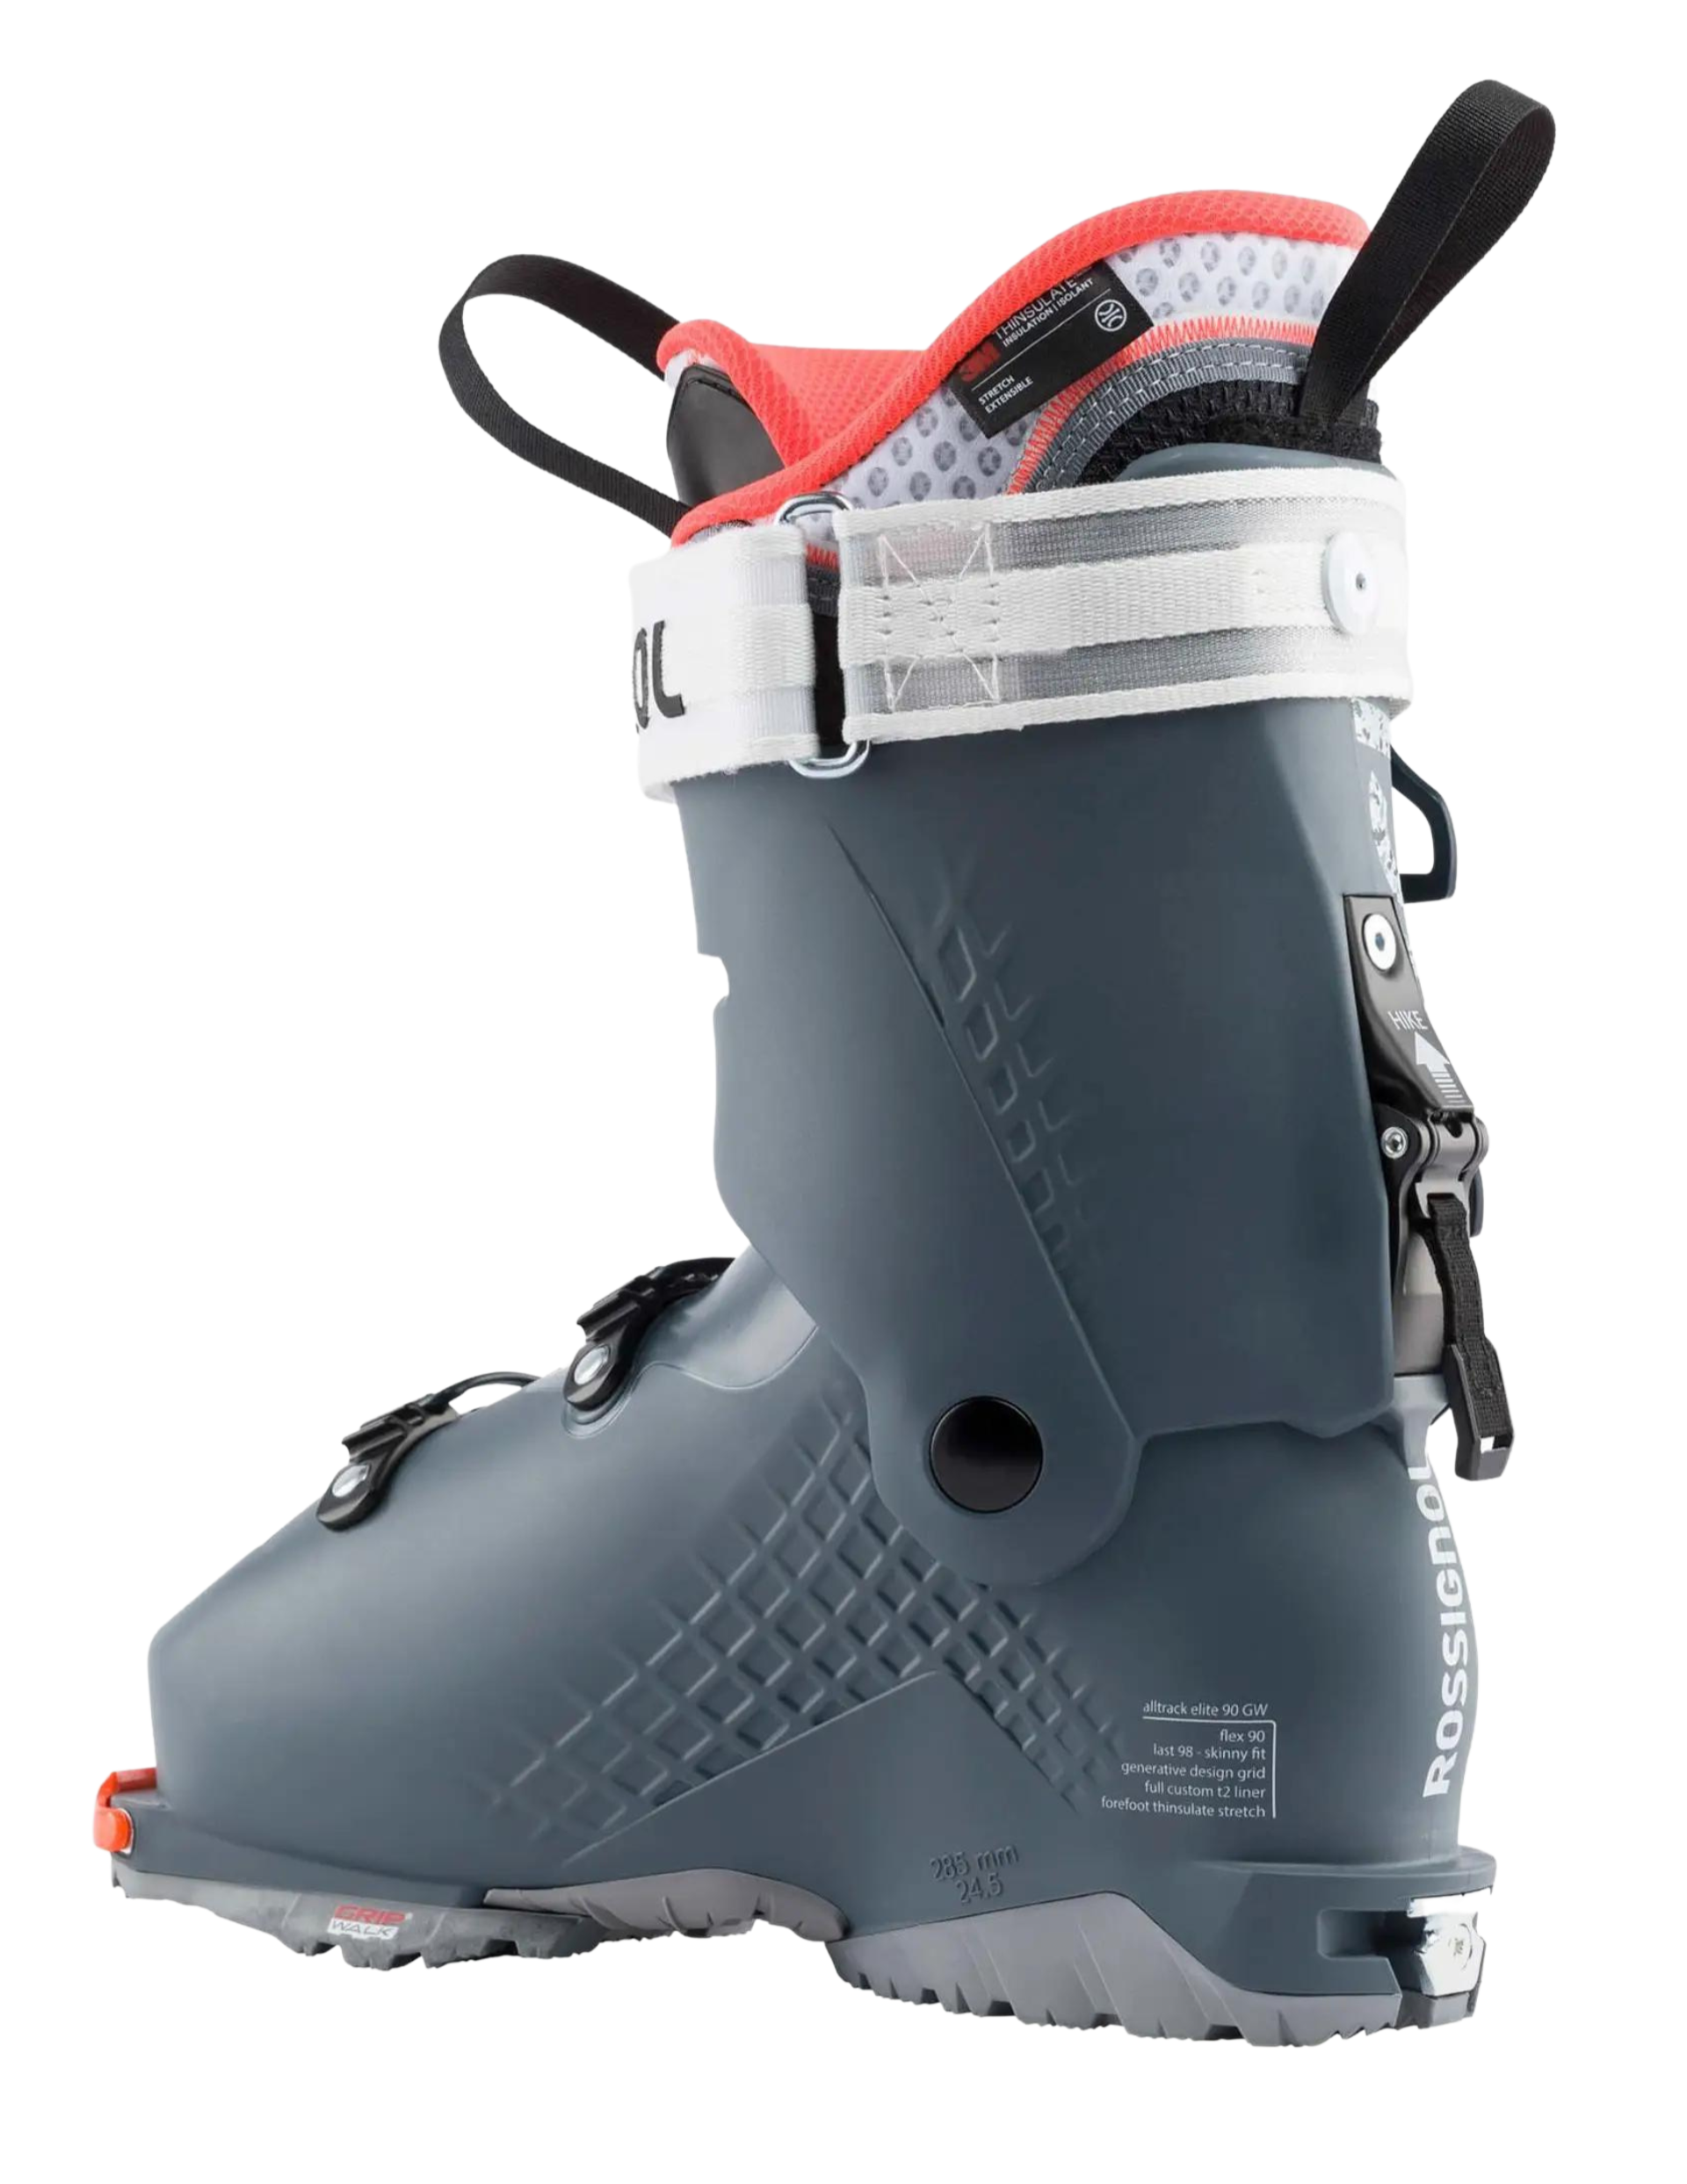 Chaussures de ski de randonnée ROSSIGNOL Alltrack Elite 90 LT Femme : partie basse de la coque de la chaussure conçue pour offrir une liberté de mouvement à 50 degrés en mode marche pour une randonnée efficace et une puissance maximale en mode ski